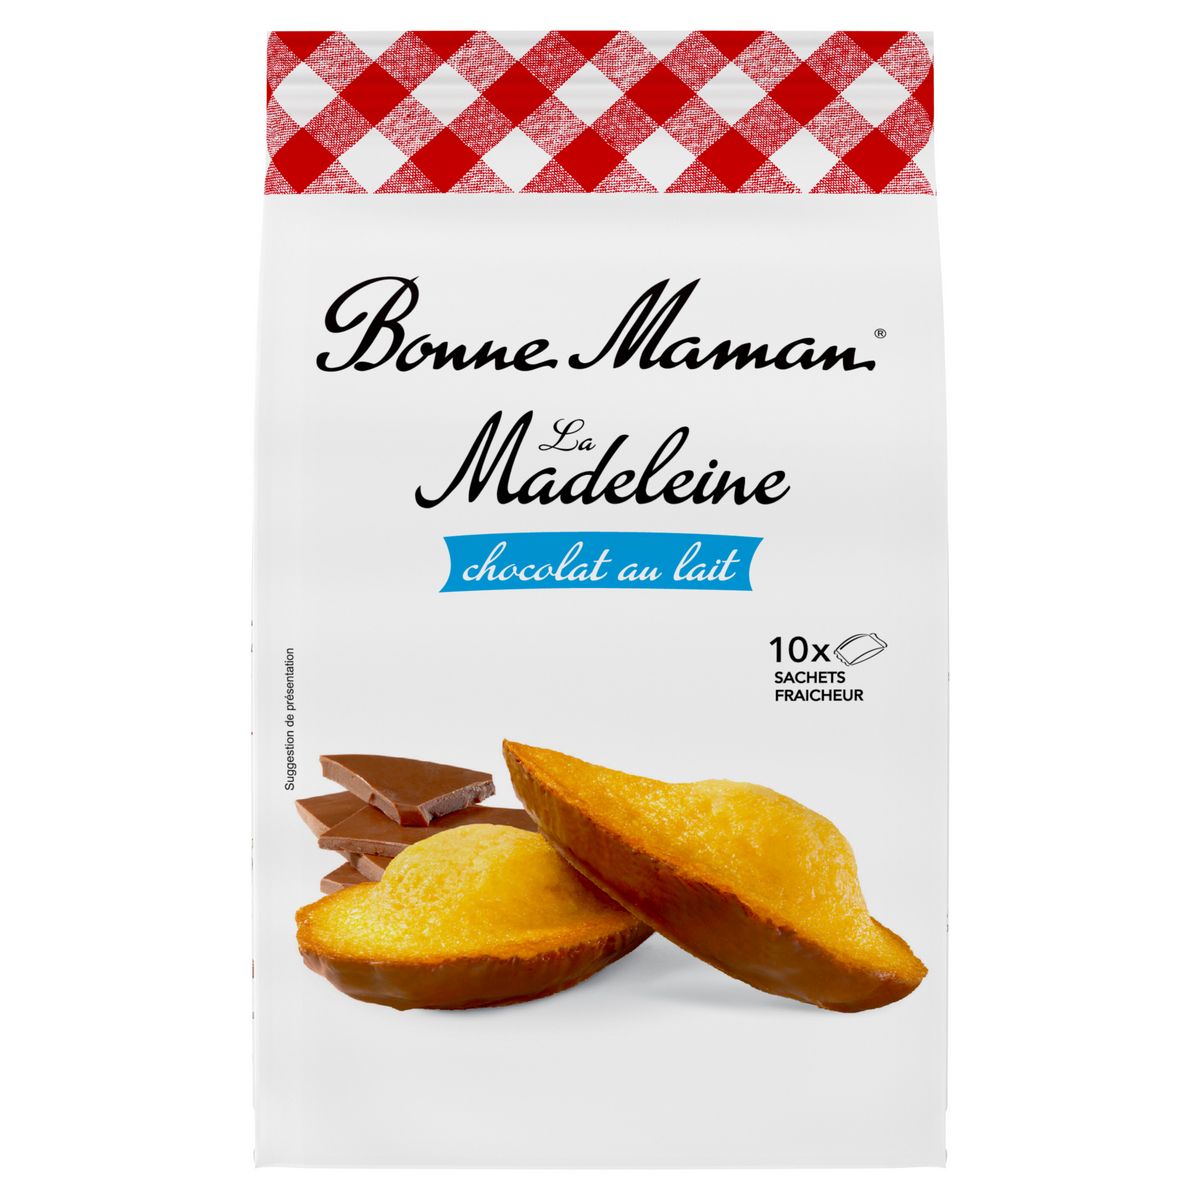 BONNE MAMAN Madeleines nappées de chocolat au lait sachets individuels 10 madeleines 300g